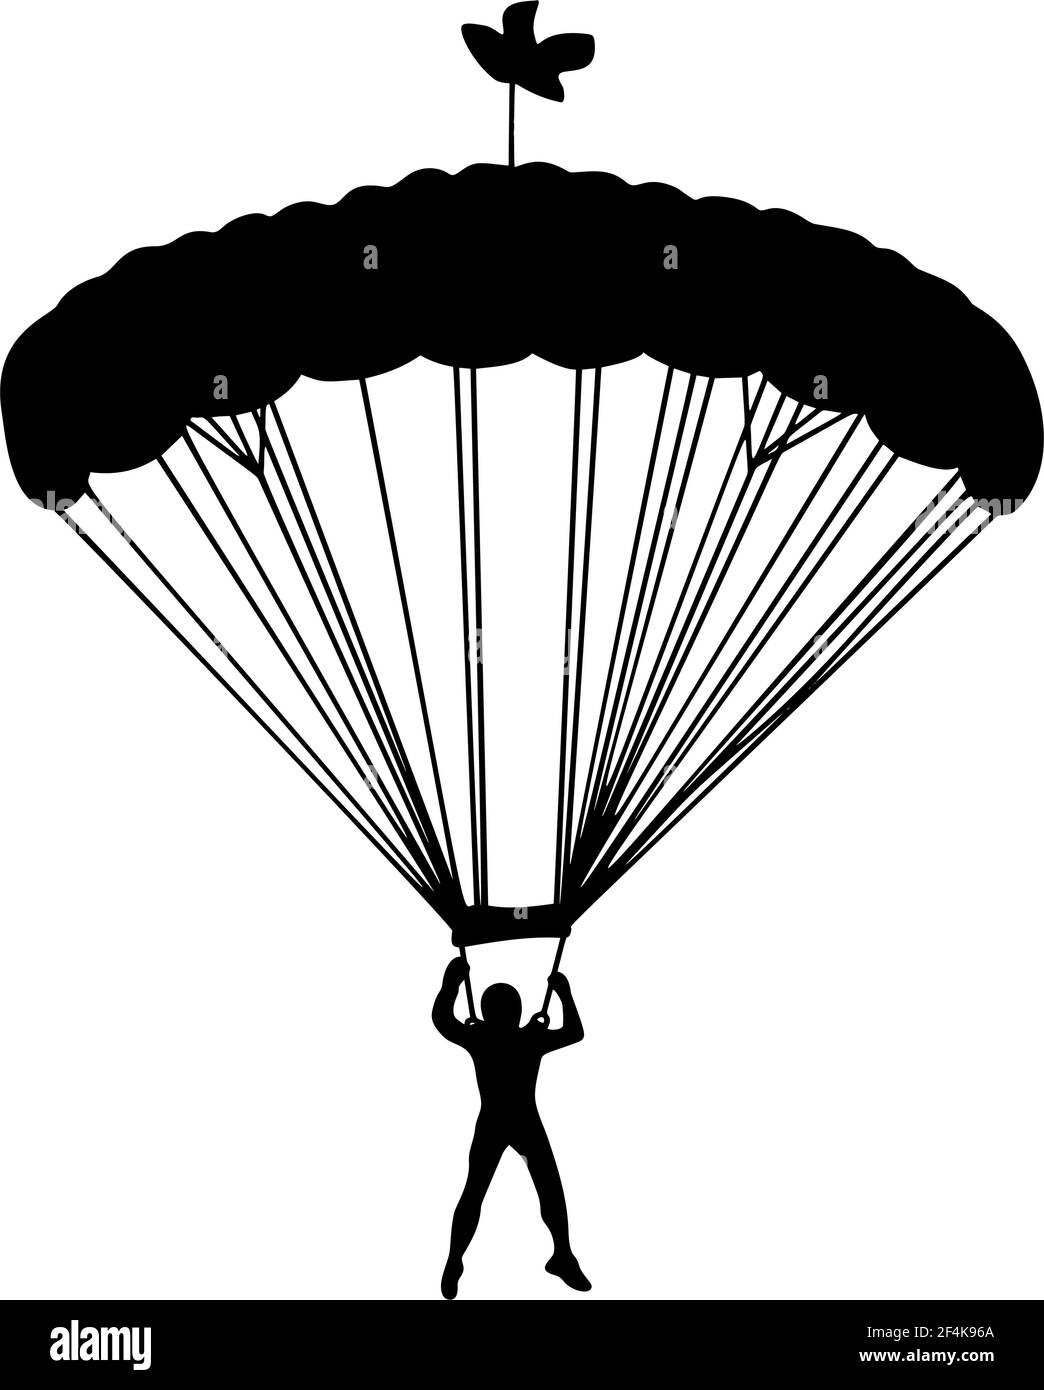 Fallschirmspringer im Flug Vektor Silhouette Illustration isoliert auf weißem Hintergrund. Versicherungsrisiko-Konzept. Mann in der Luft springen. Fallschirmspringer Akrobatik. Milit Stock Vektor